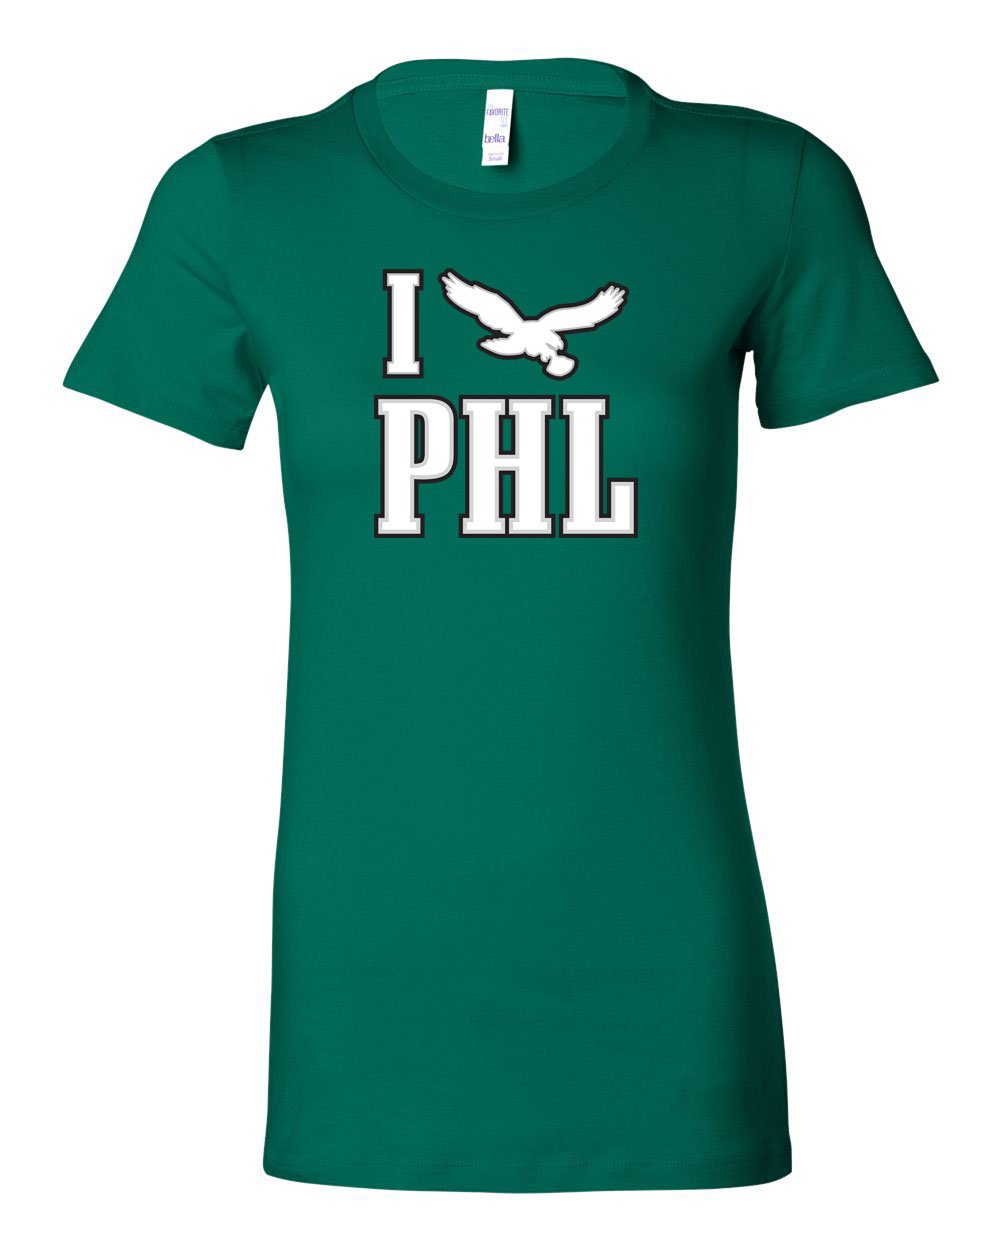 I PHL LADIES Junior-Fit T-Shirt